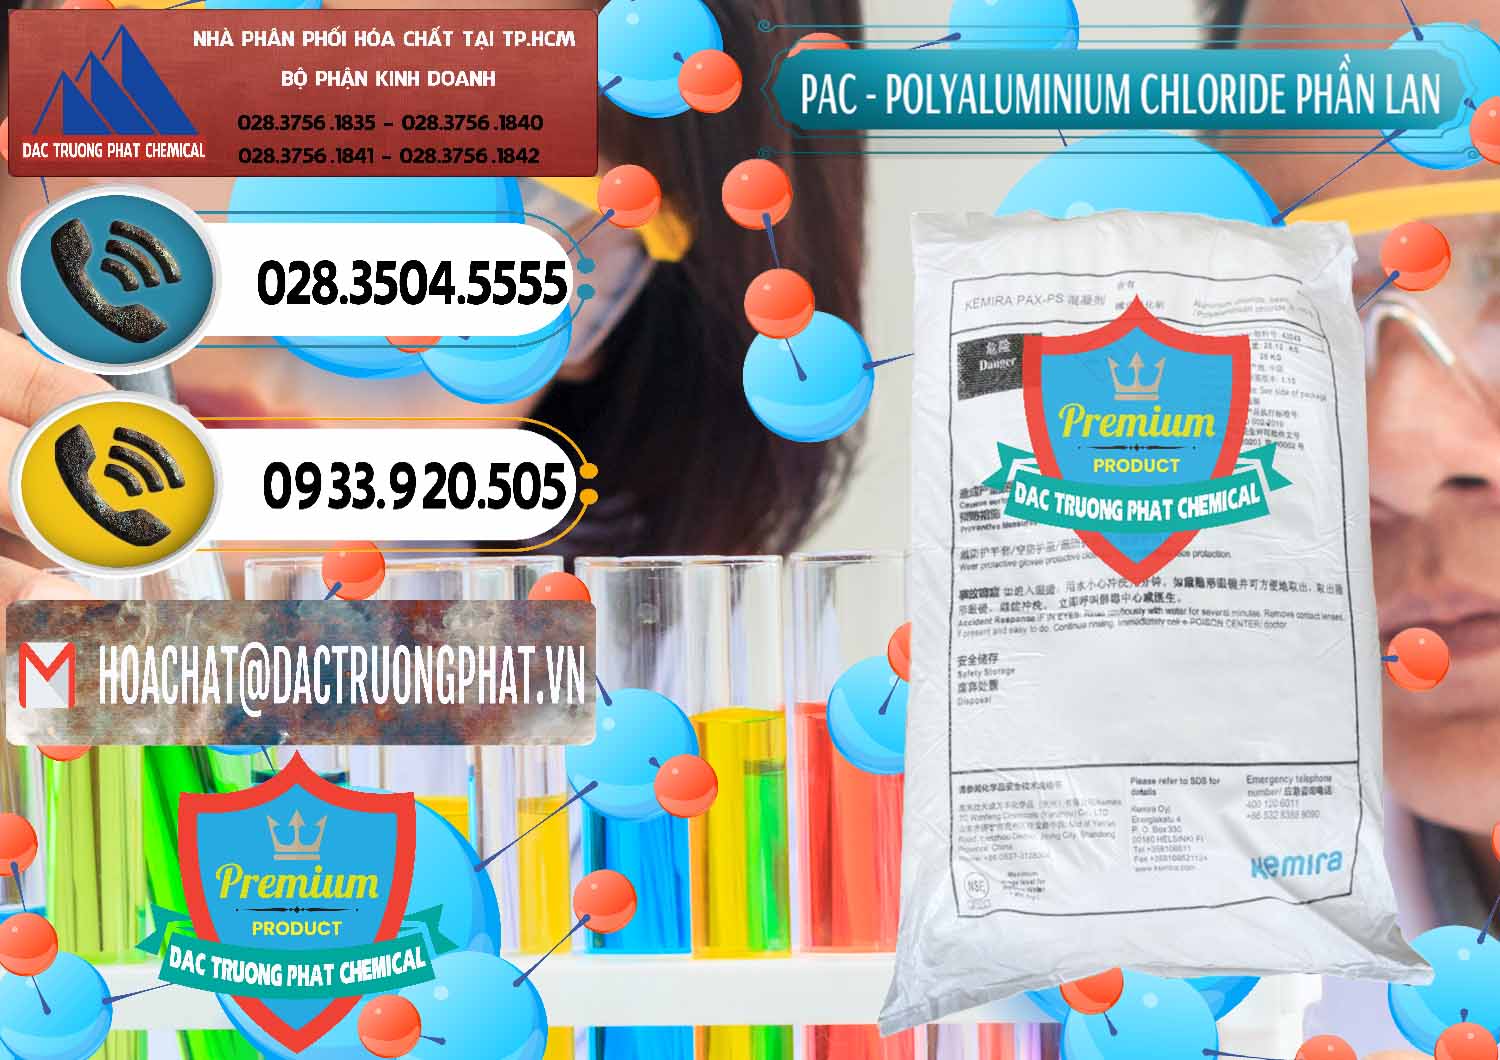 Cty phân phối & bán PAC - Polyaluminium Chloride Phần Lan Finland - 0383 - Đơn vị chuyên bán và phân phối hóa chất tại TP.HCM - hoachatdetnhuom.vn